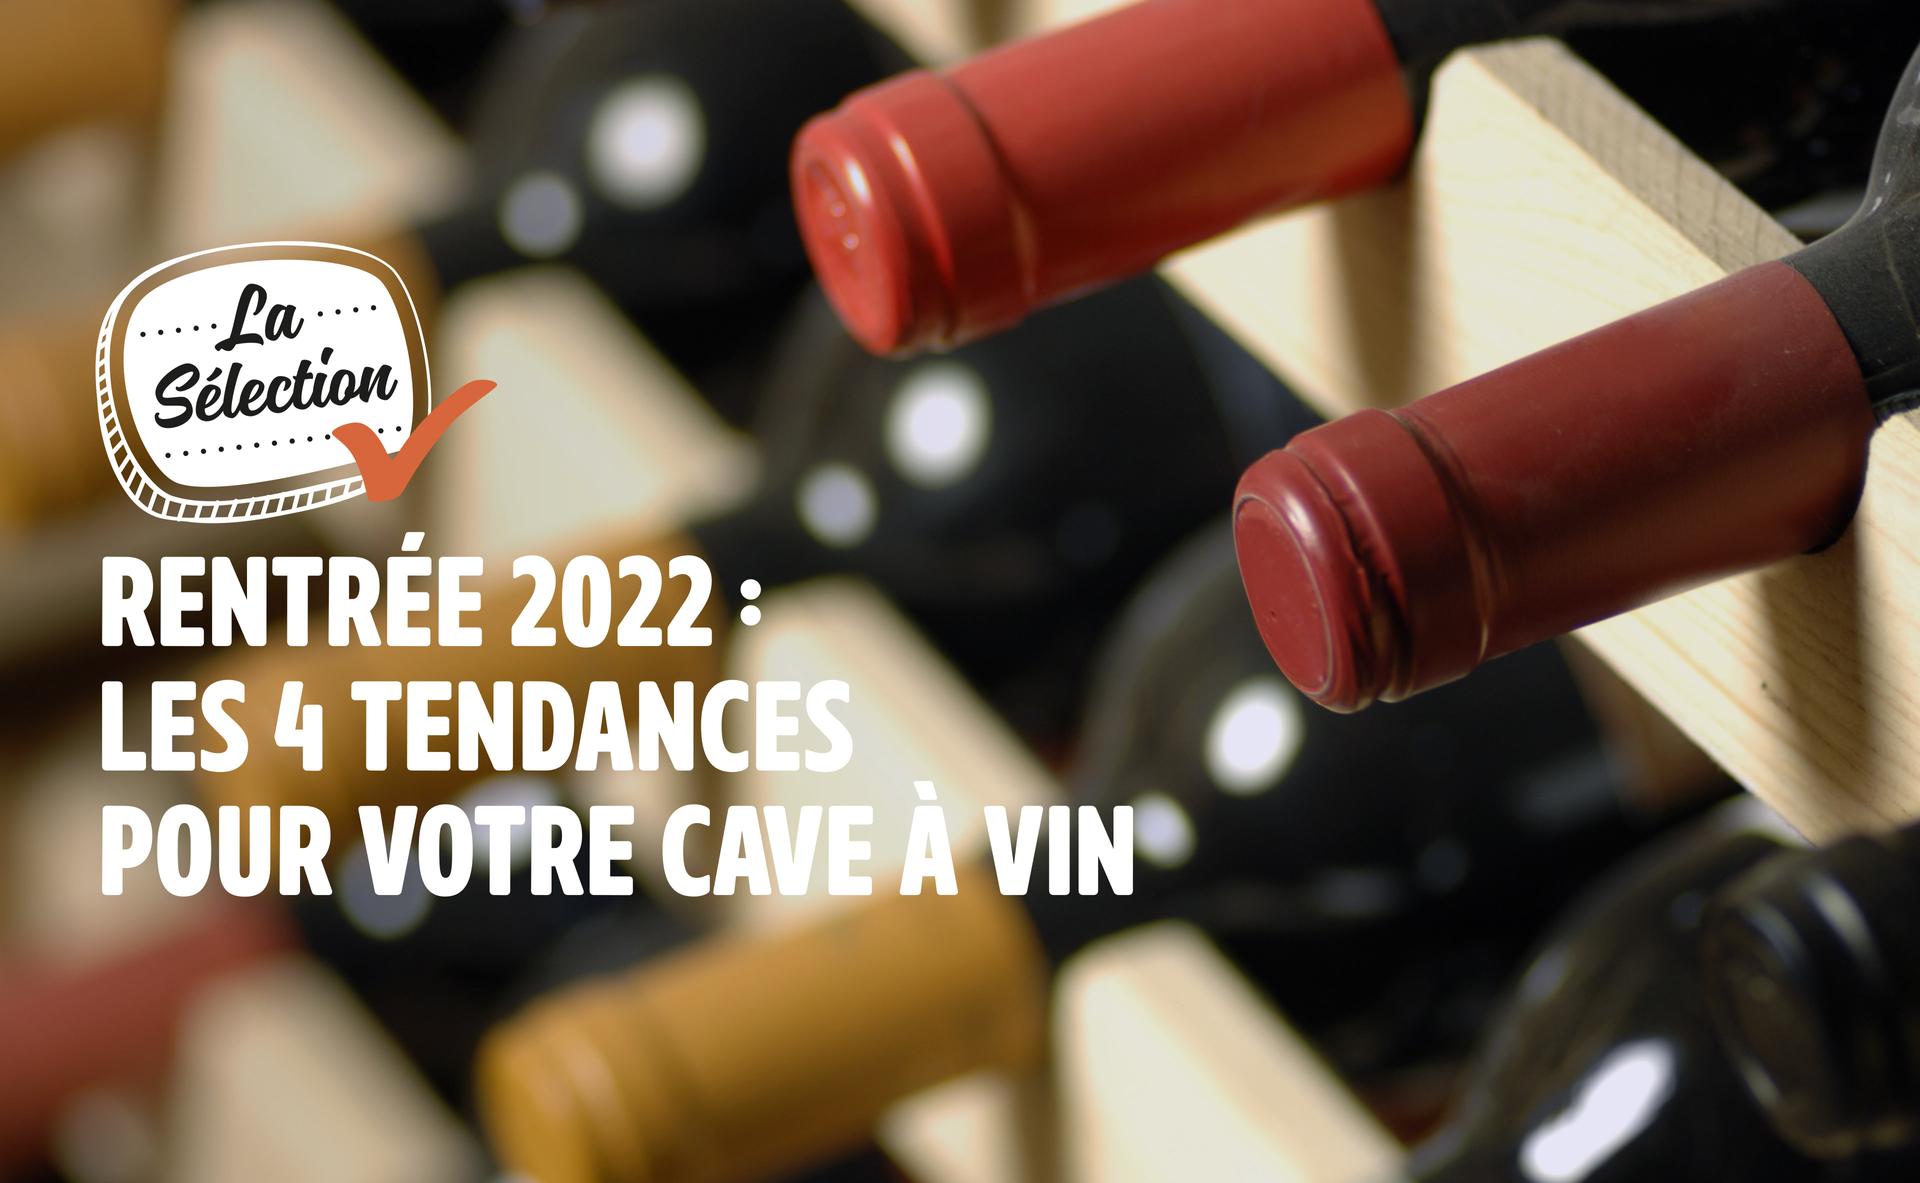 Rentrée 2022 : les 4 tendances pour votre cave à vin